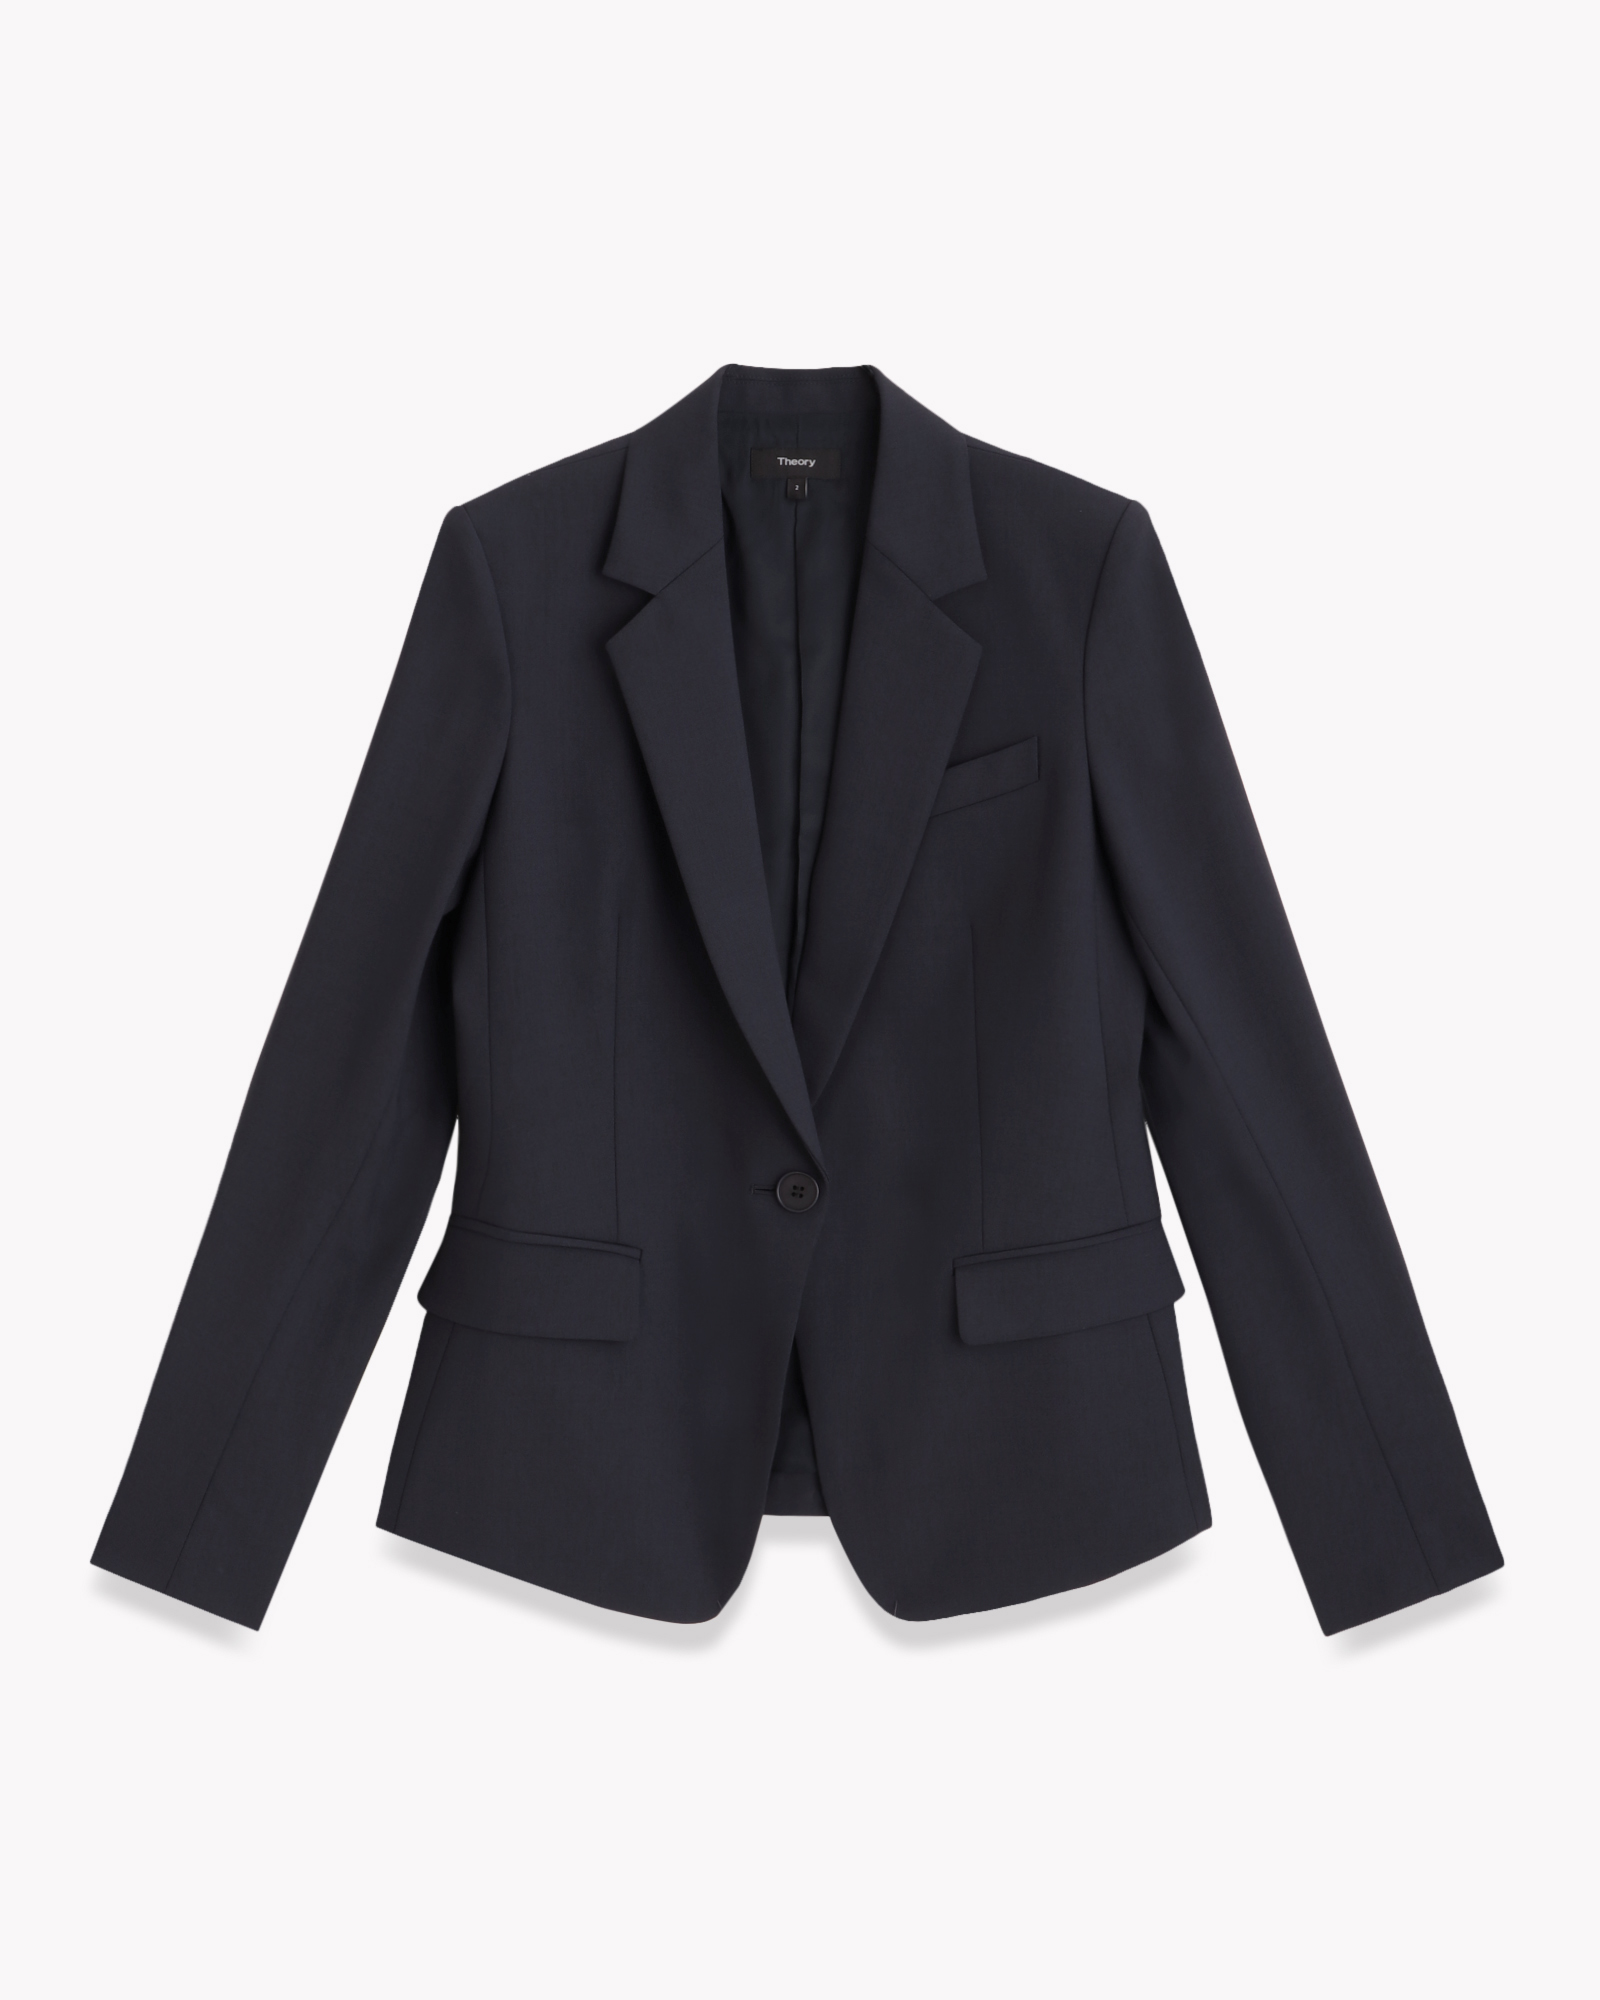 【新品】theory Tailor Gabe 2 スーツジャケット テーラードジャケット 免税店サイト